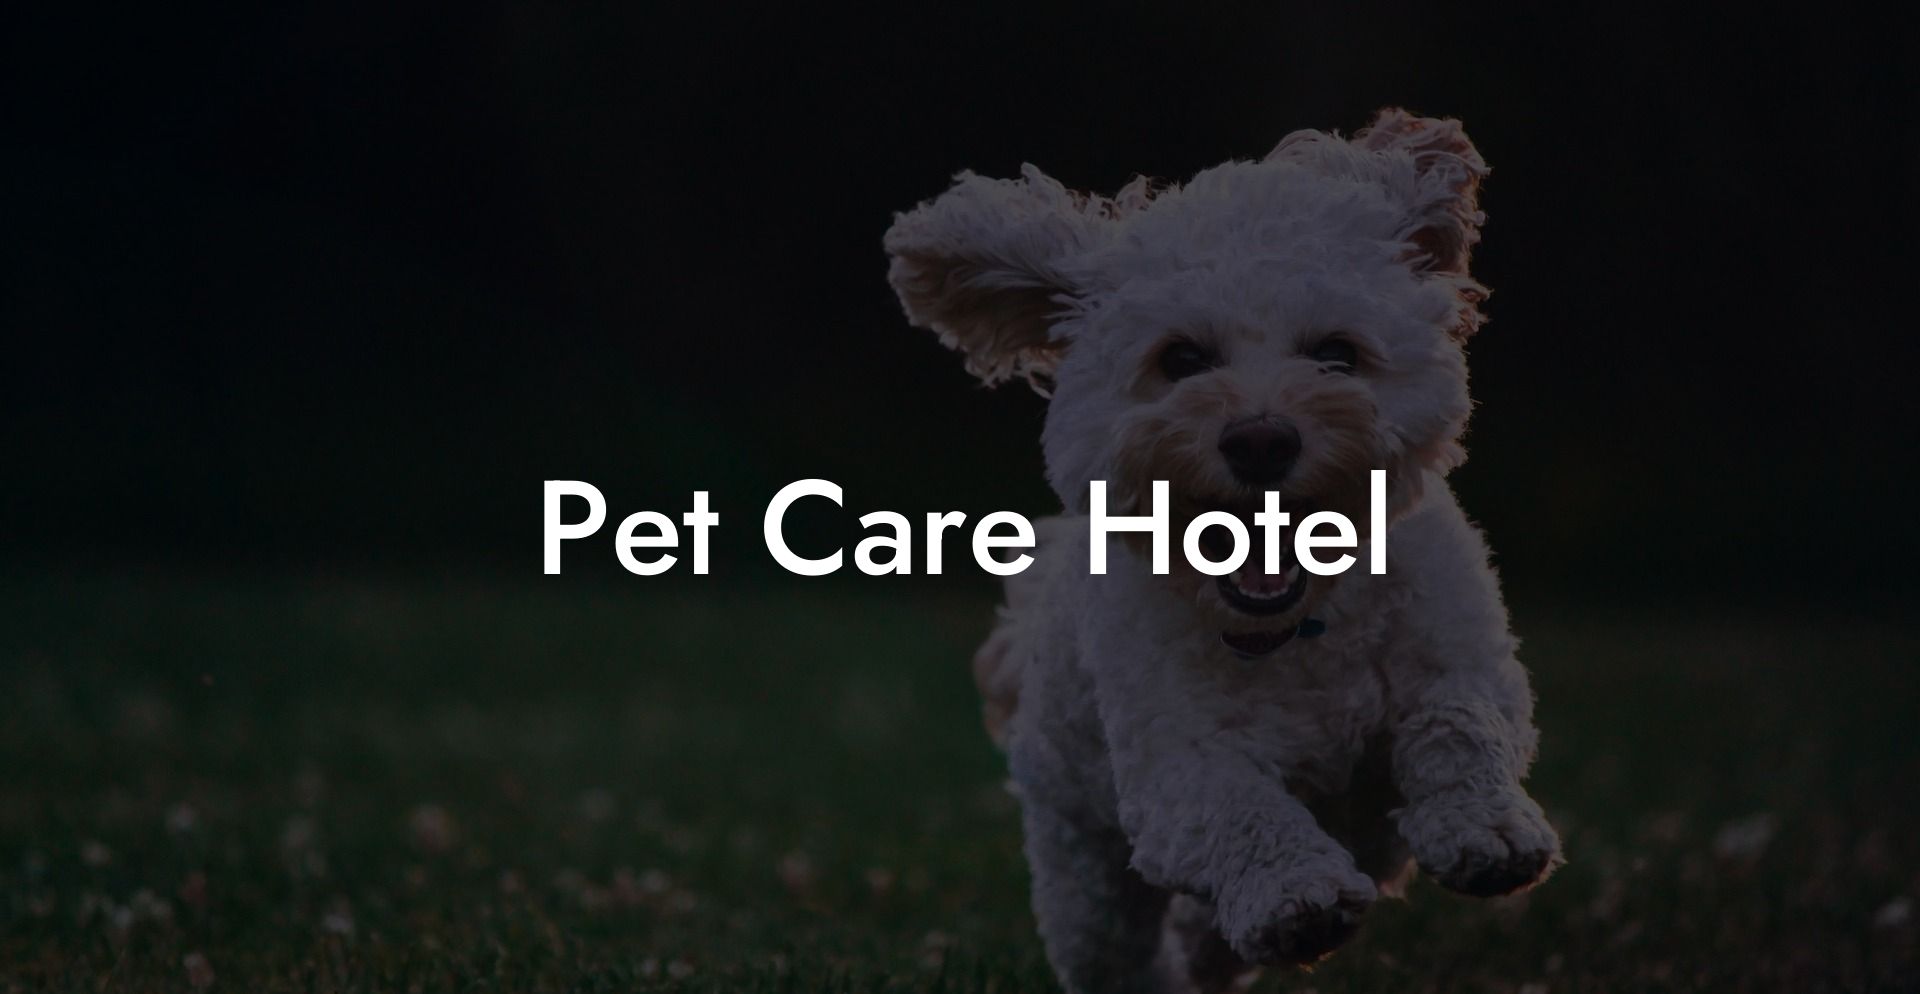 Pet Care Hotel